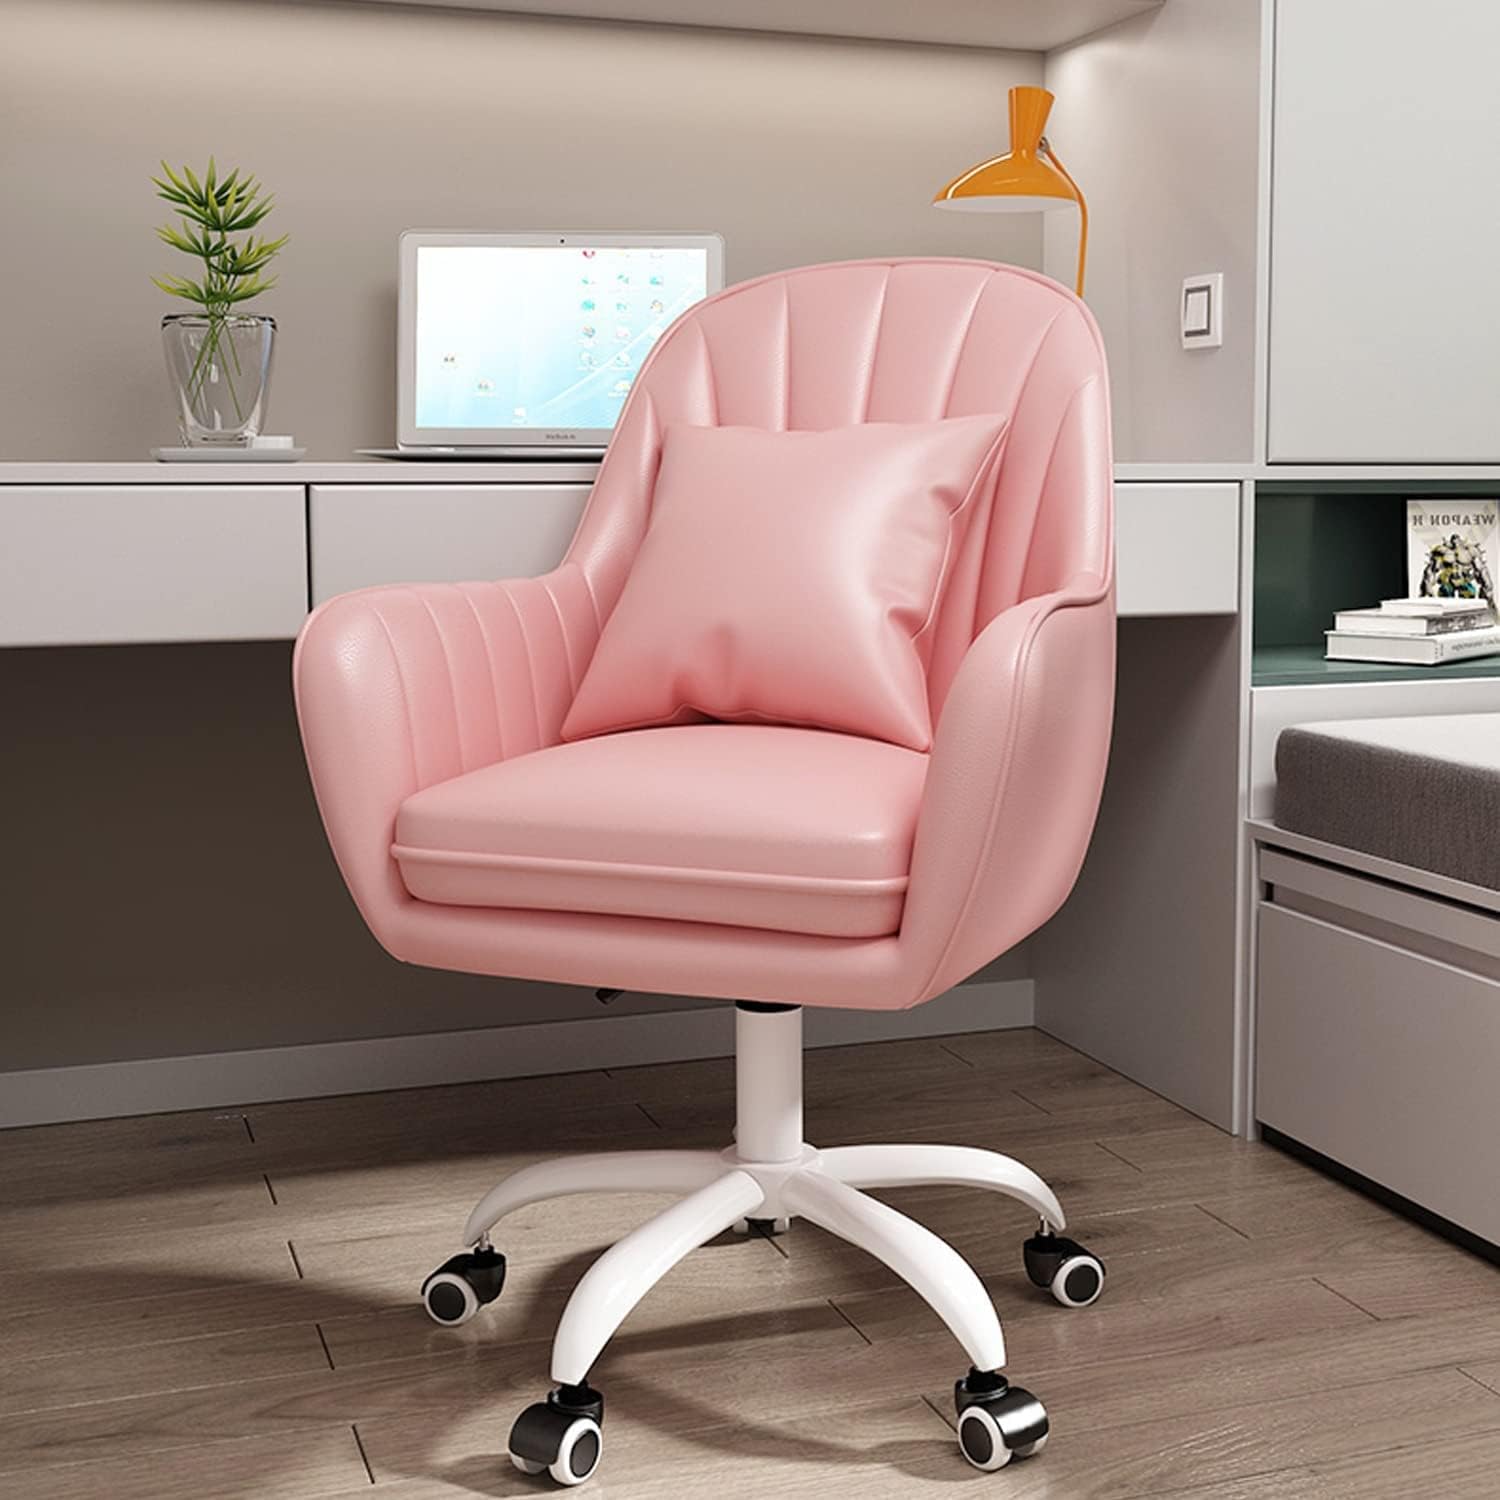 オフィスチェア デスクチェア パソコンチェア 360回転 座面昇降 社長椅子 勉強 仕事 在宅勤務 腰クッション付き テレワーク 事務椅子  キャスター付き 椅子